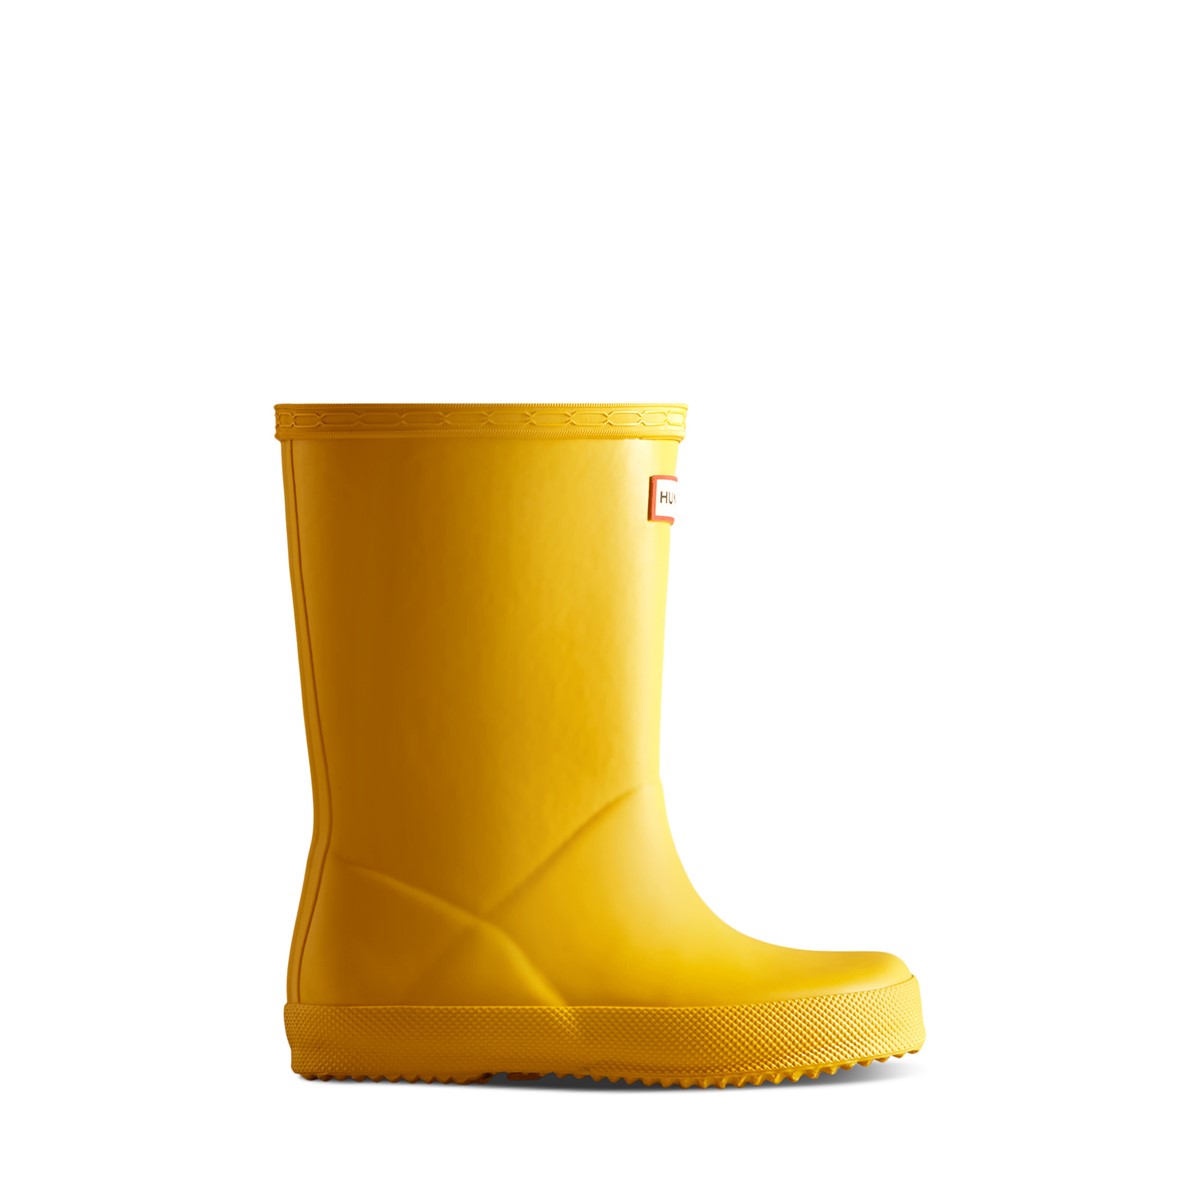 Premières bottes de pluie classiques jaunes pour tout-petits